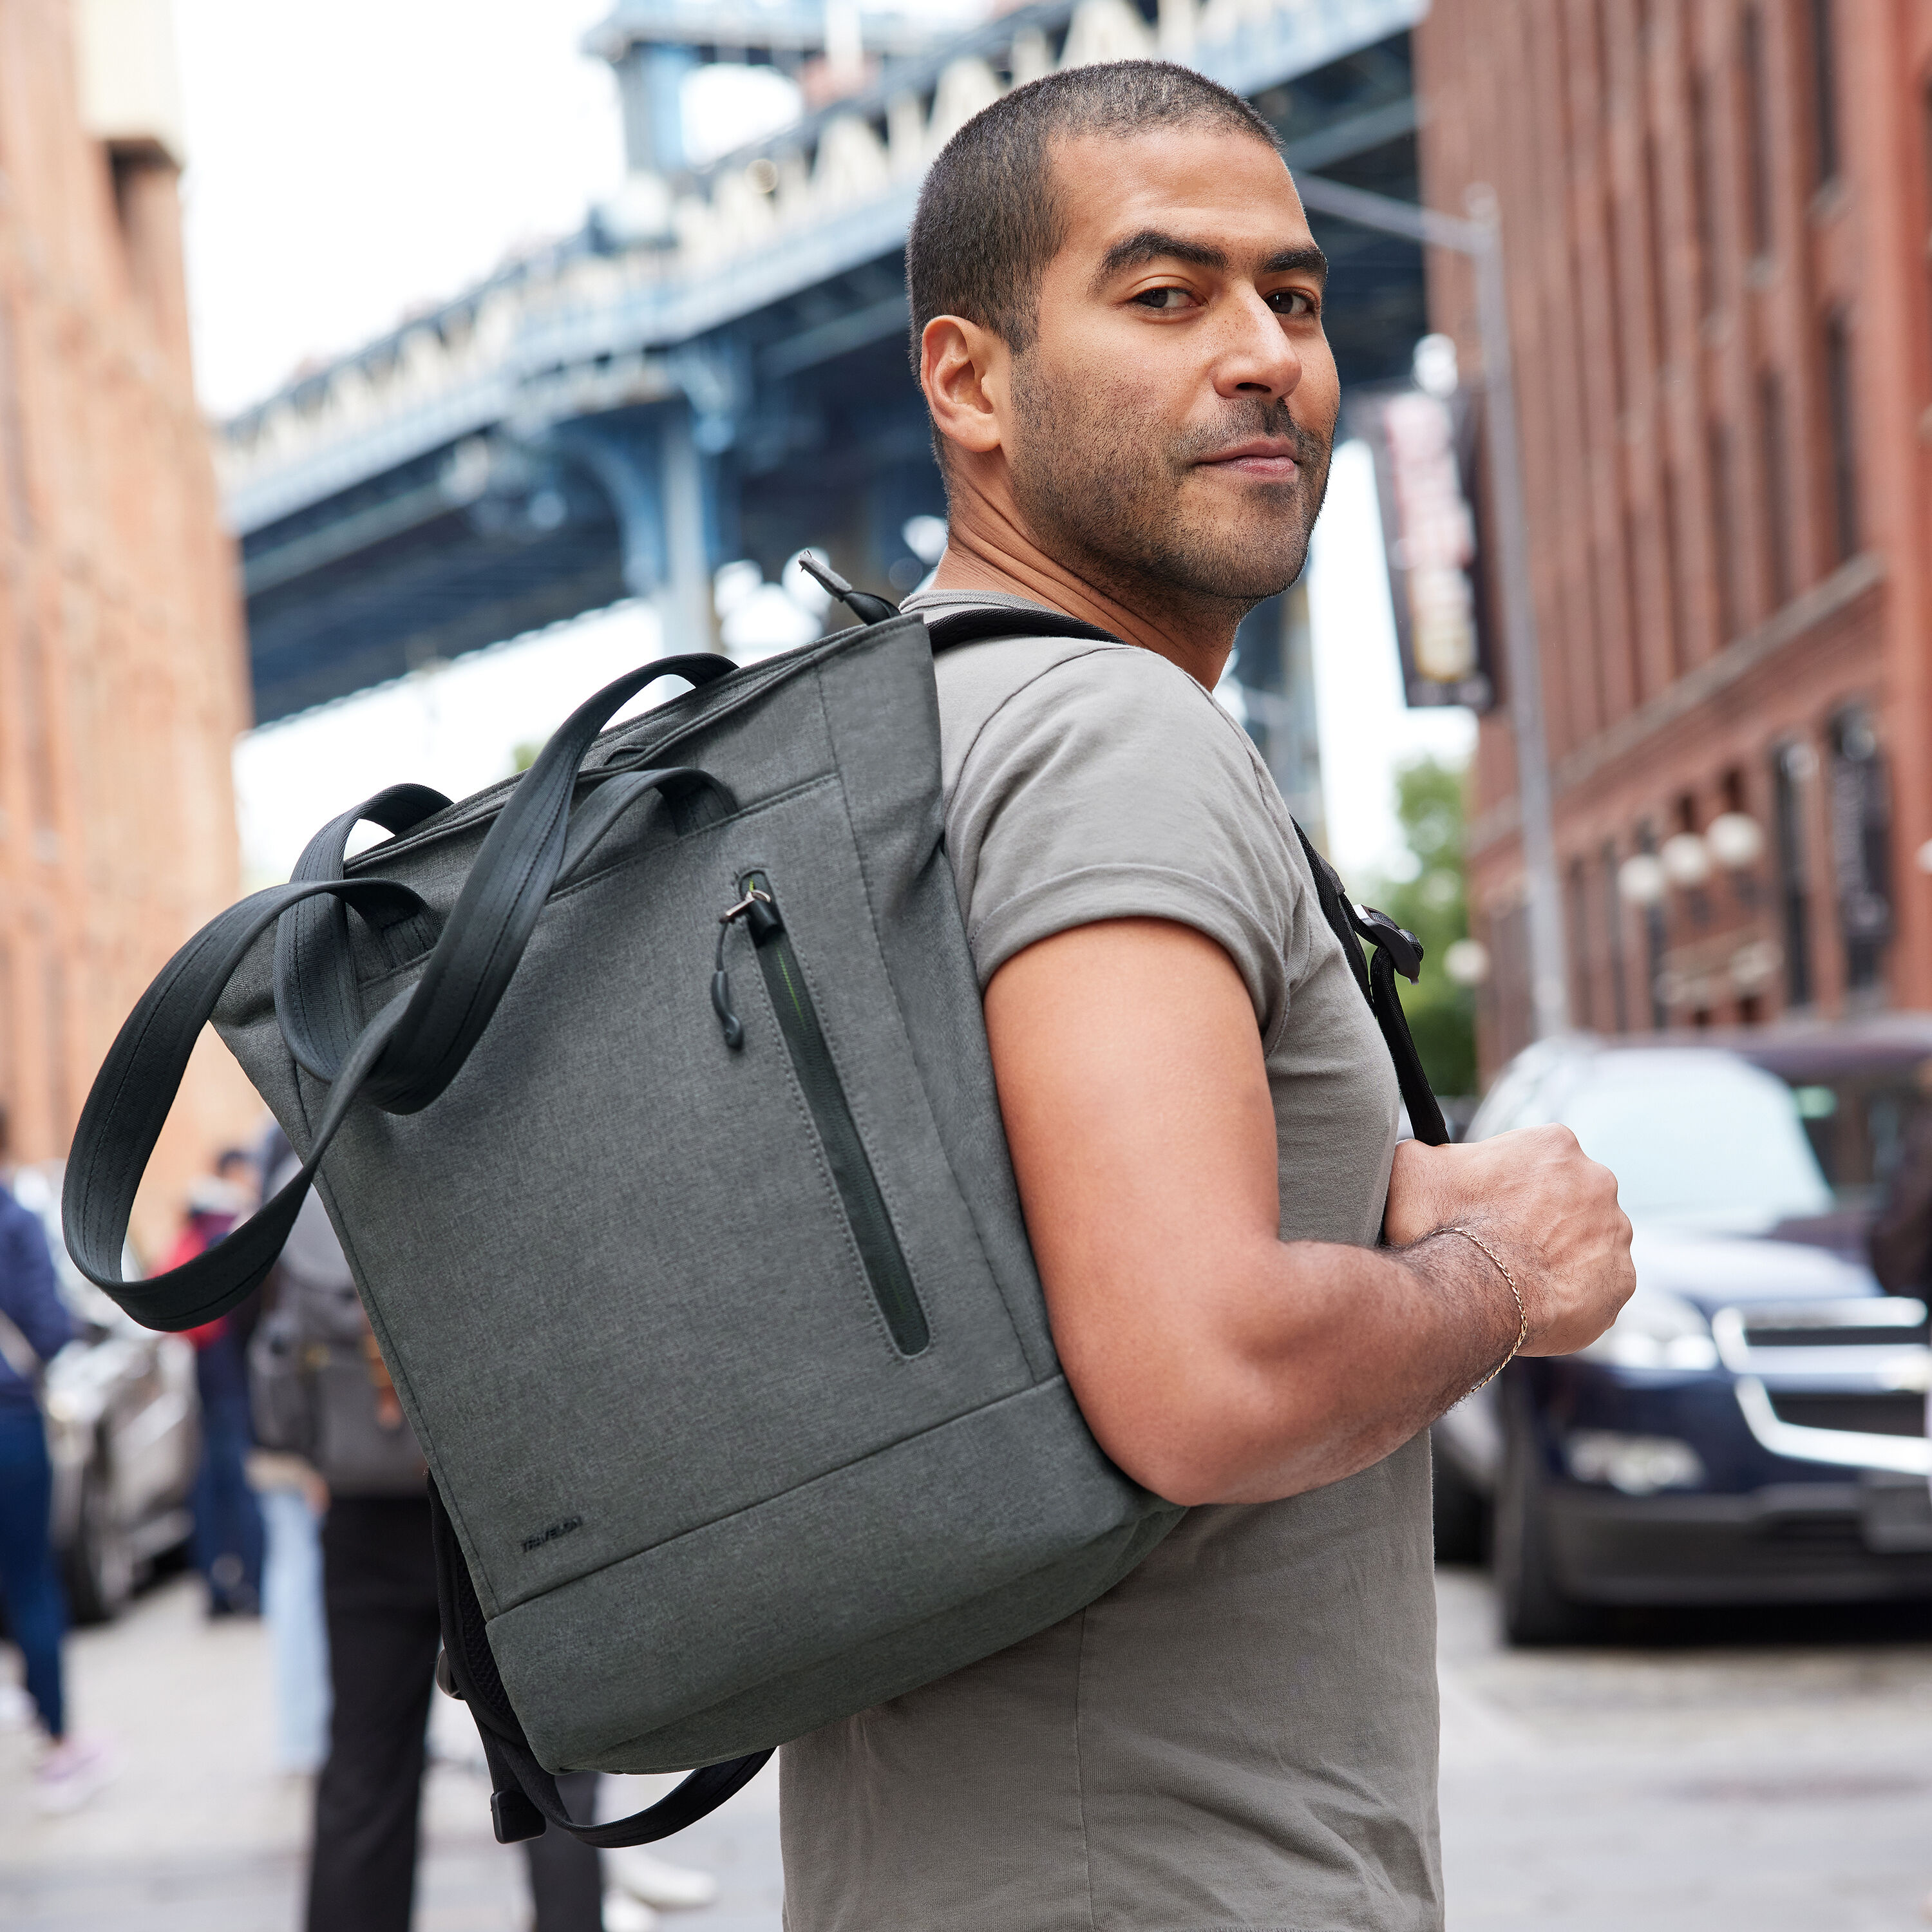 Canvas Retro Men's Shoulder Bag, Messenger Bag Travel Portable Small Bag,  Women Backpack Bag, Phone Bag, Unisex Bag for Travel, Gift for Him - Etsy